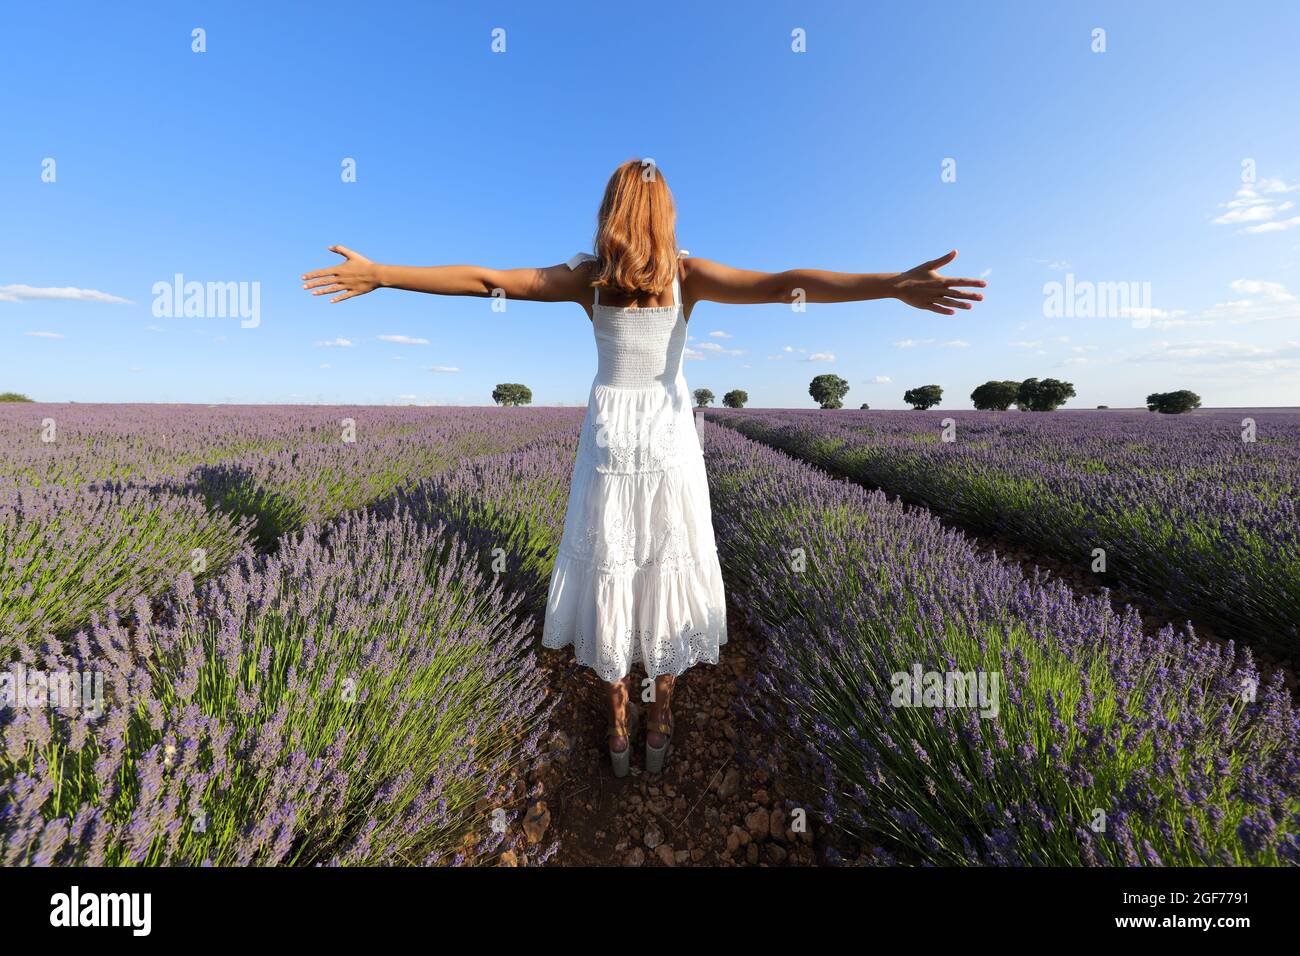 Rückansicht einer Frau im weißen Kleid, die die Arme in einem Lavendelfeld ausstreckt Stockfoto